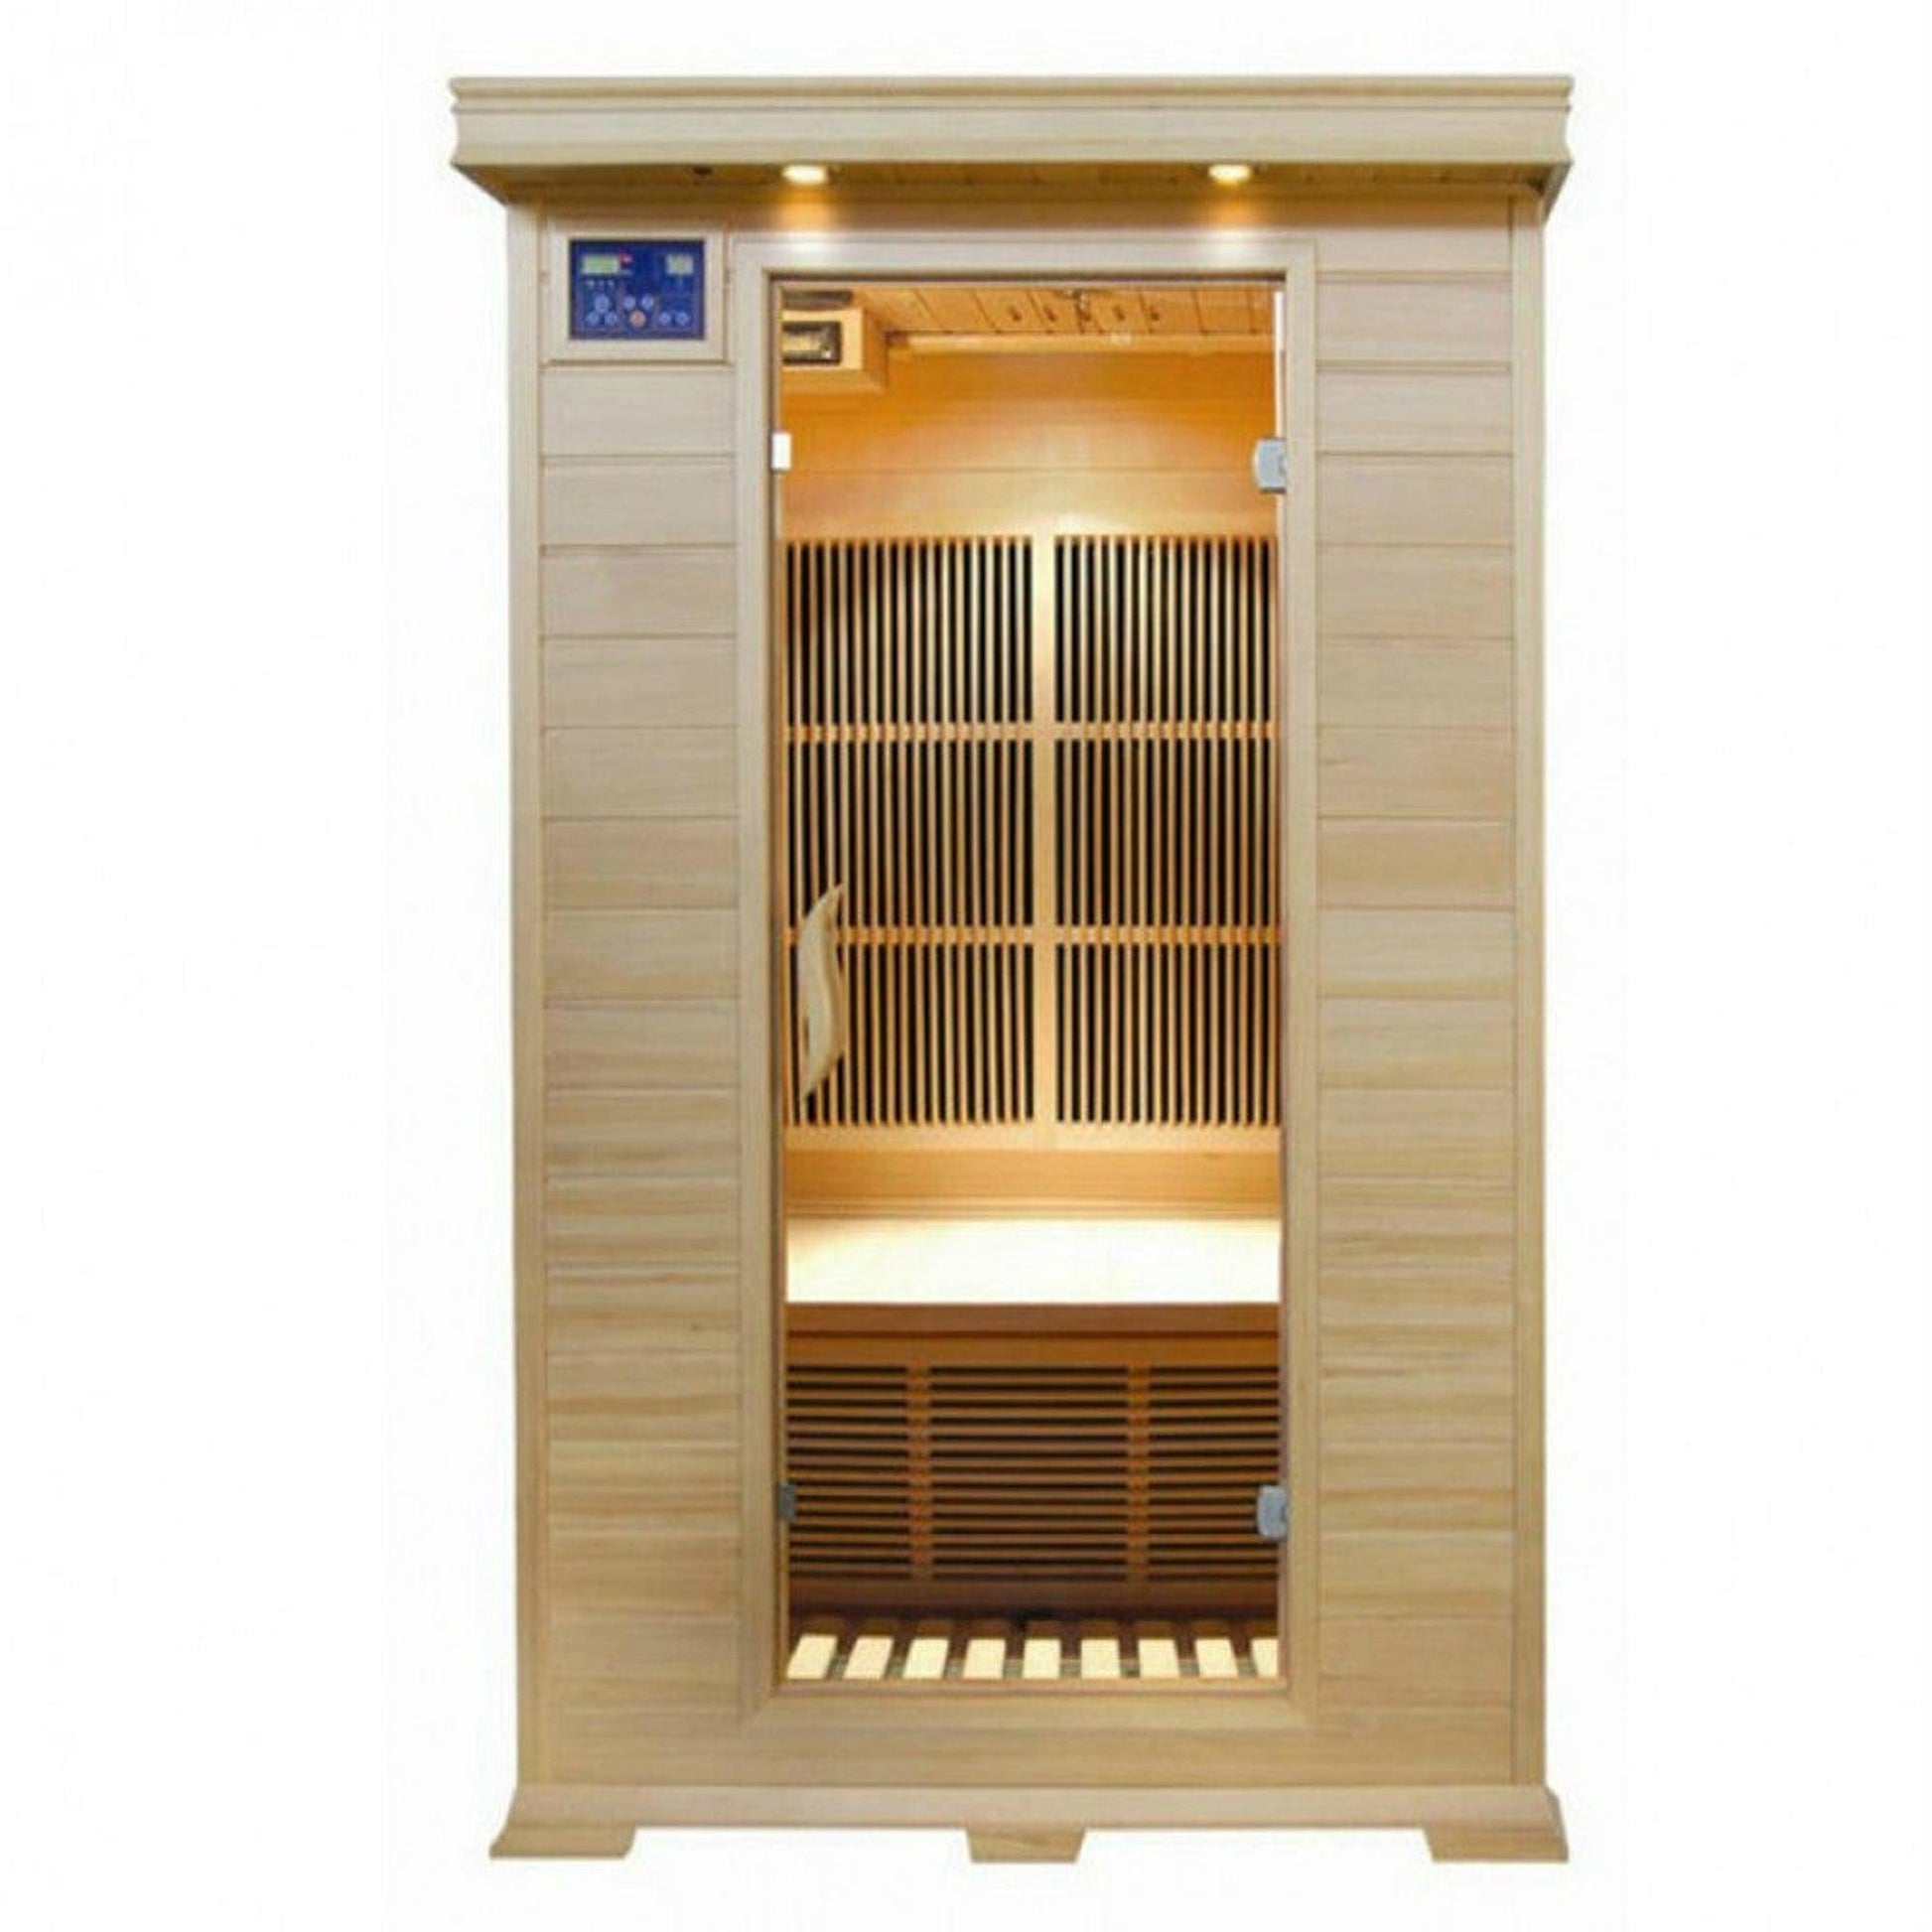 SunRay Evansport 2-Person Indoor Infrared Sauna In Hemlock Wood With Carbon Nano Heaters